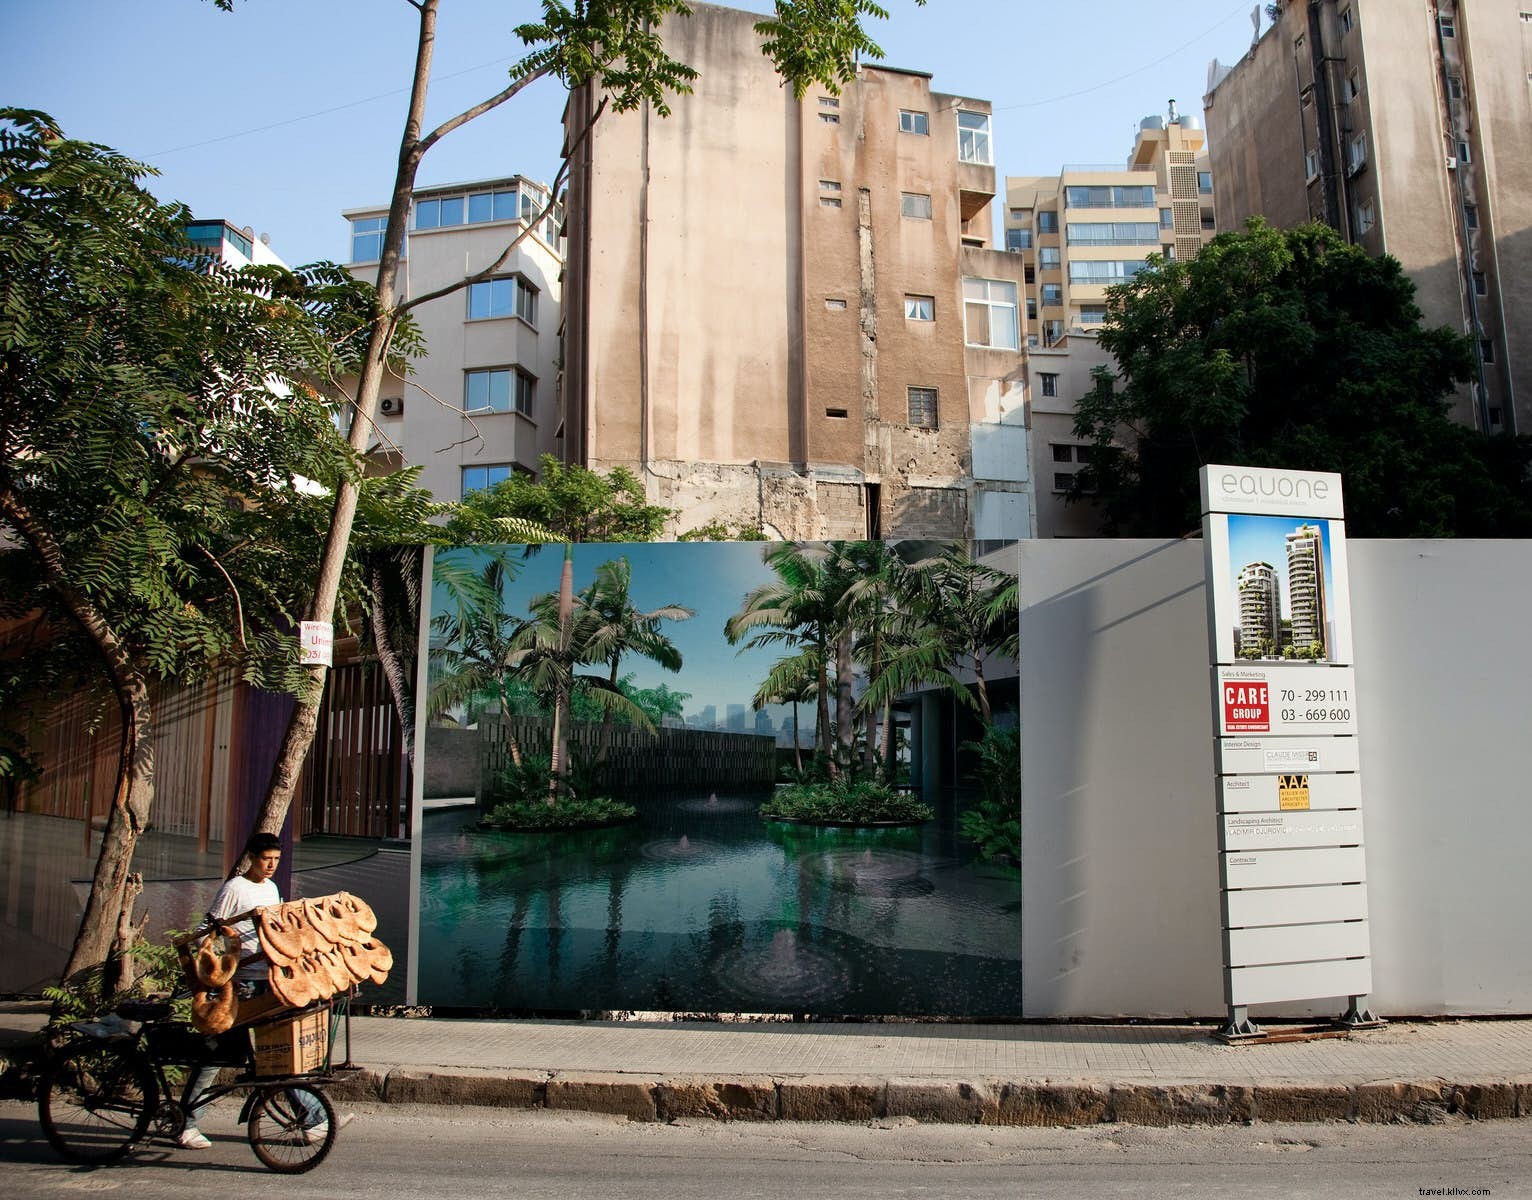 Una guida rapida ai migliori quartieri di Beirut 